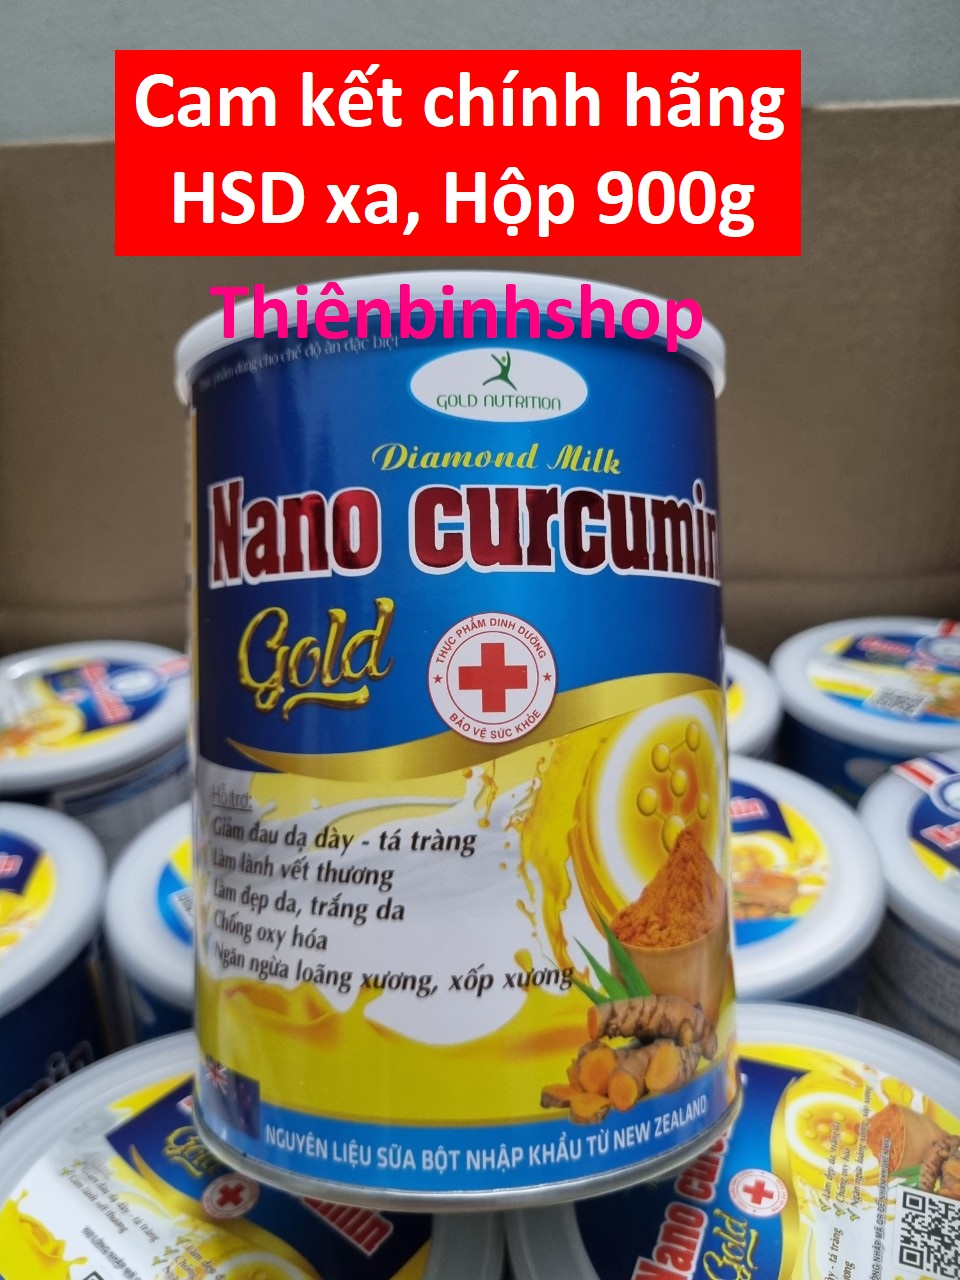 Sữa nghệ Nano Curcumin Gold - giảm đau dạ dày, tá tràng